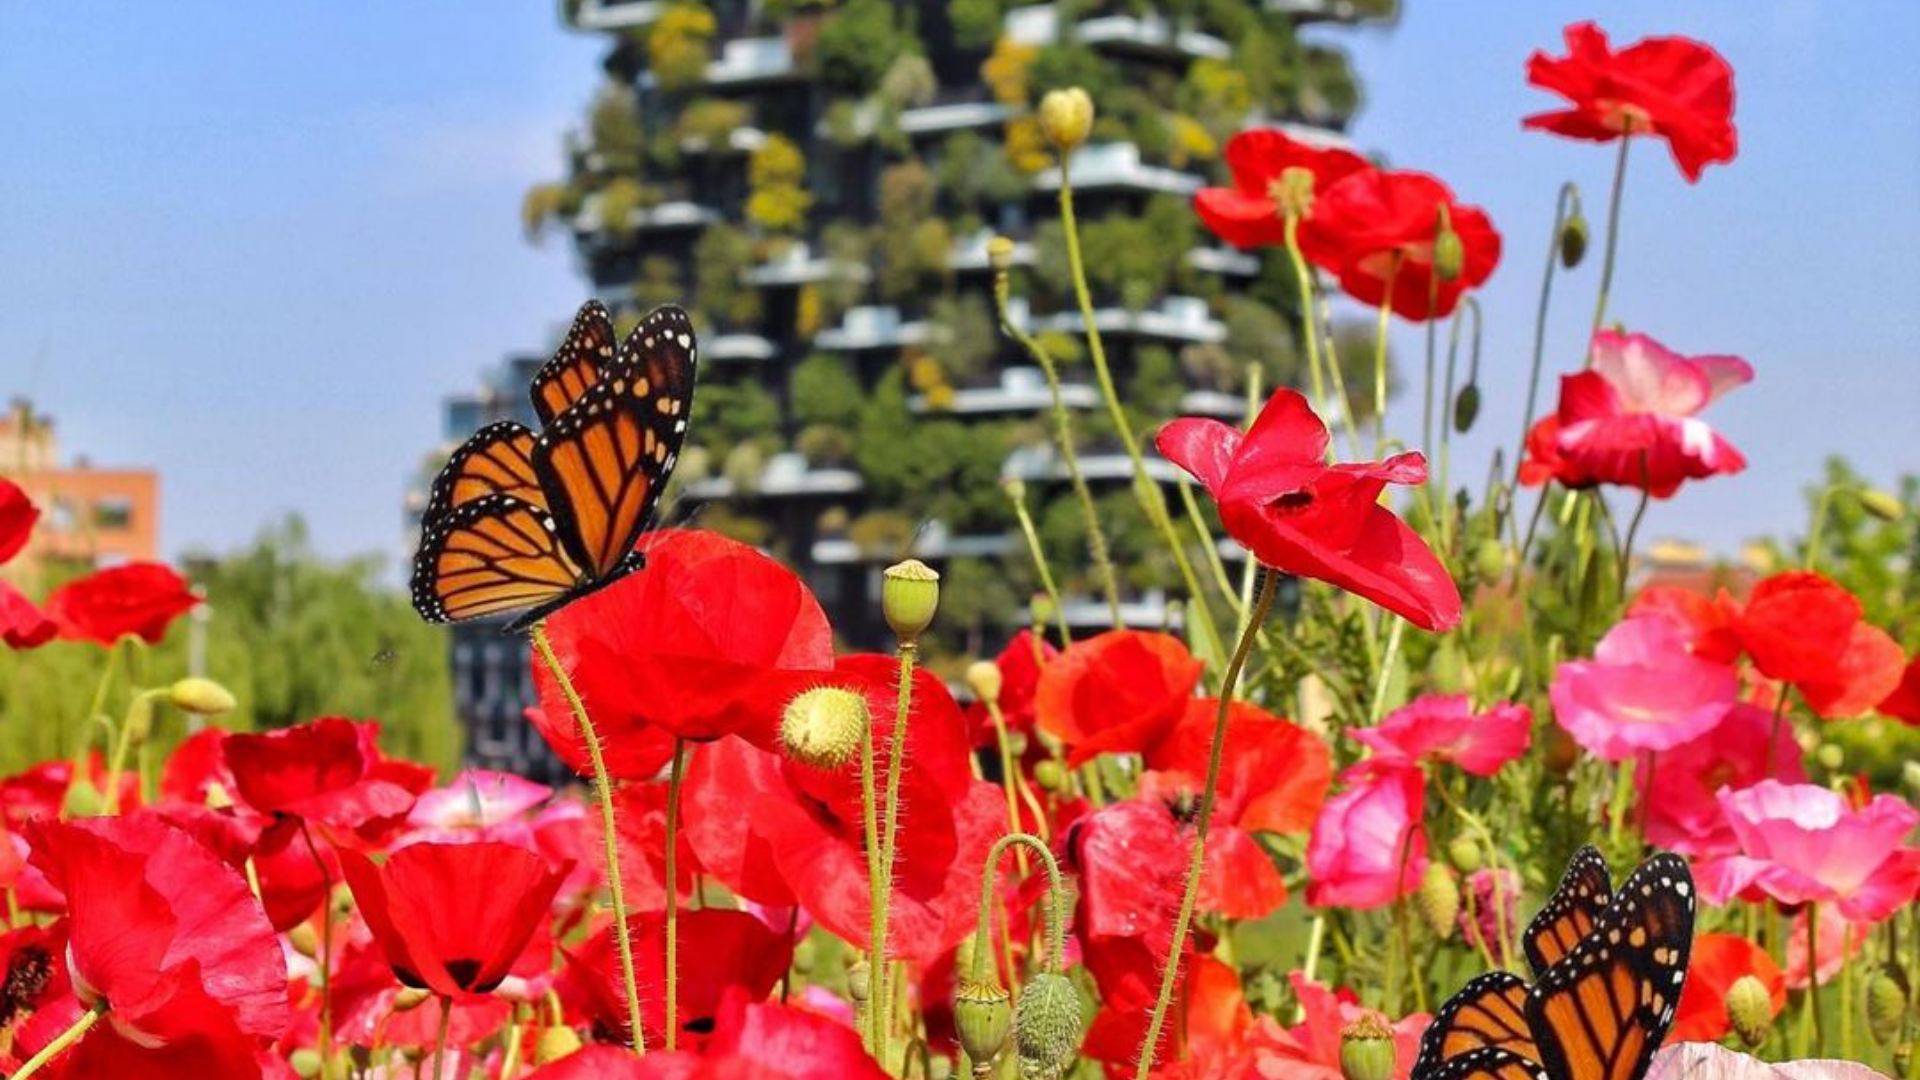 Posti instagrammabili a Milano: 5 luoghi in fiore spettacolari per le tue foto